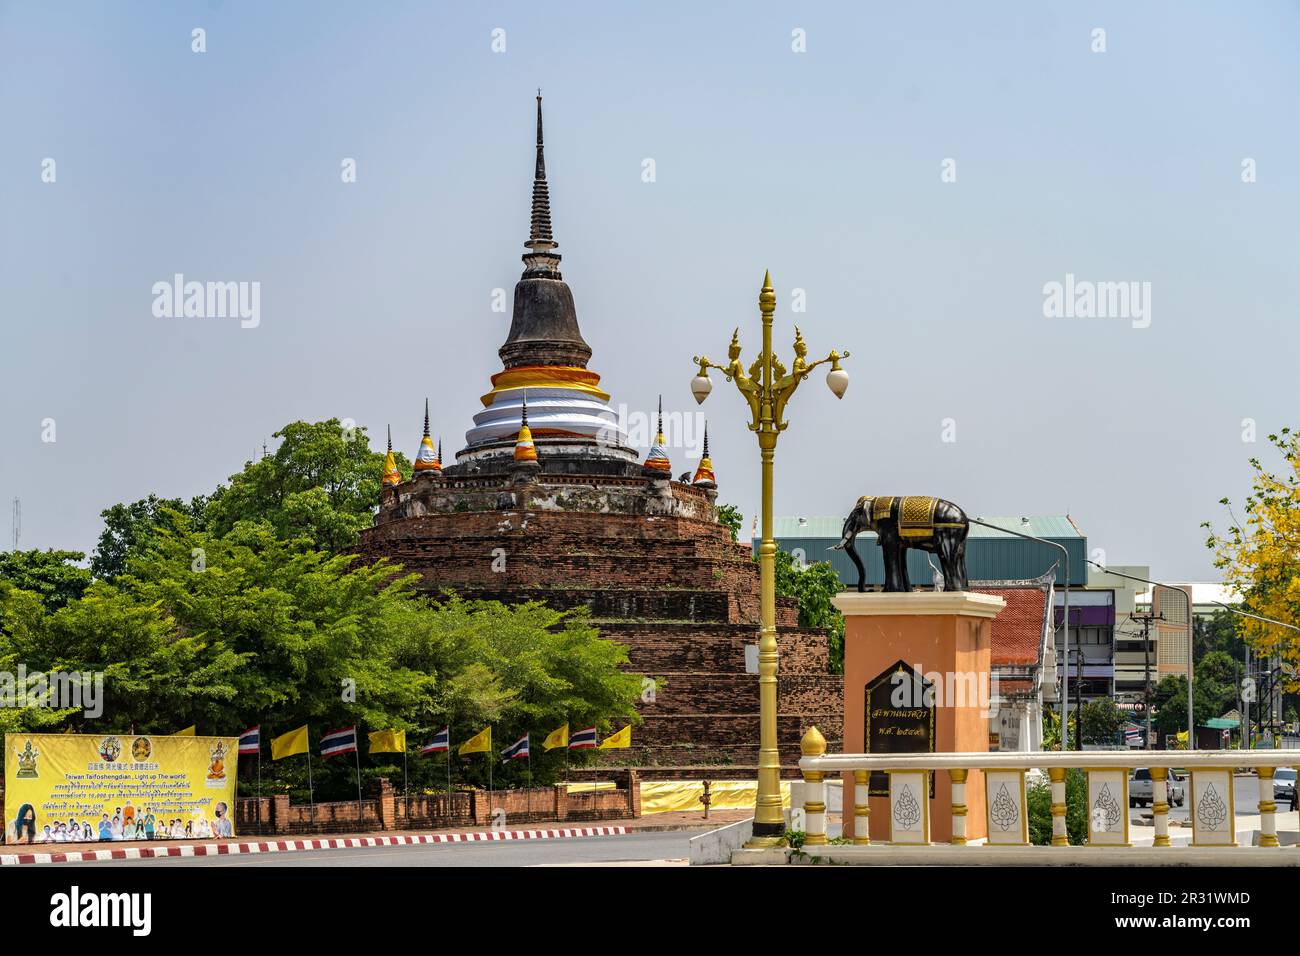 Der buddhistische Tempel Wat Ratchaburana, Phitsanulok, Thailand, Asien  |  Wat Ratchaburana buddhist temple, Phitsanulok, Thailand, Asia Stock Photo